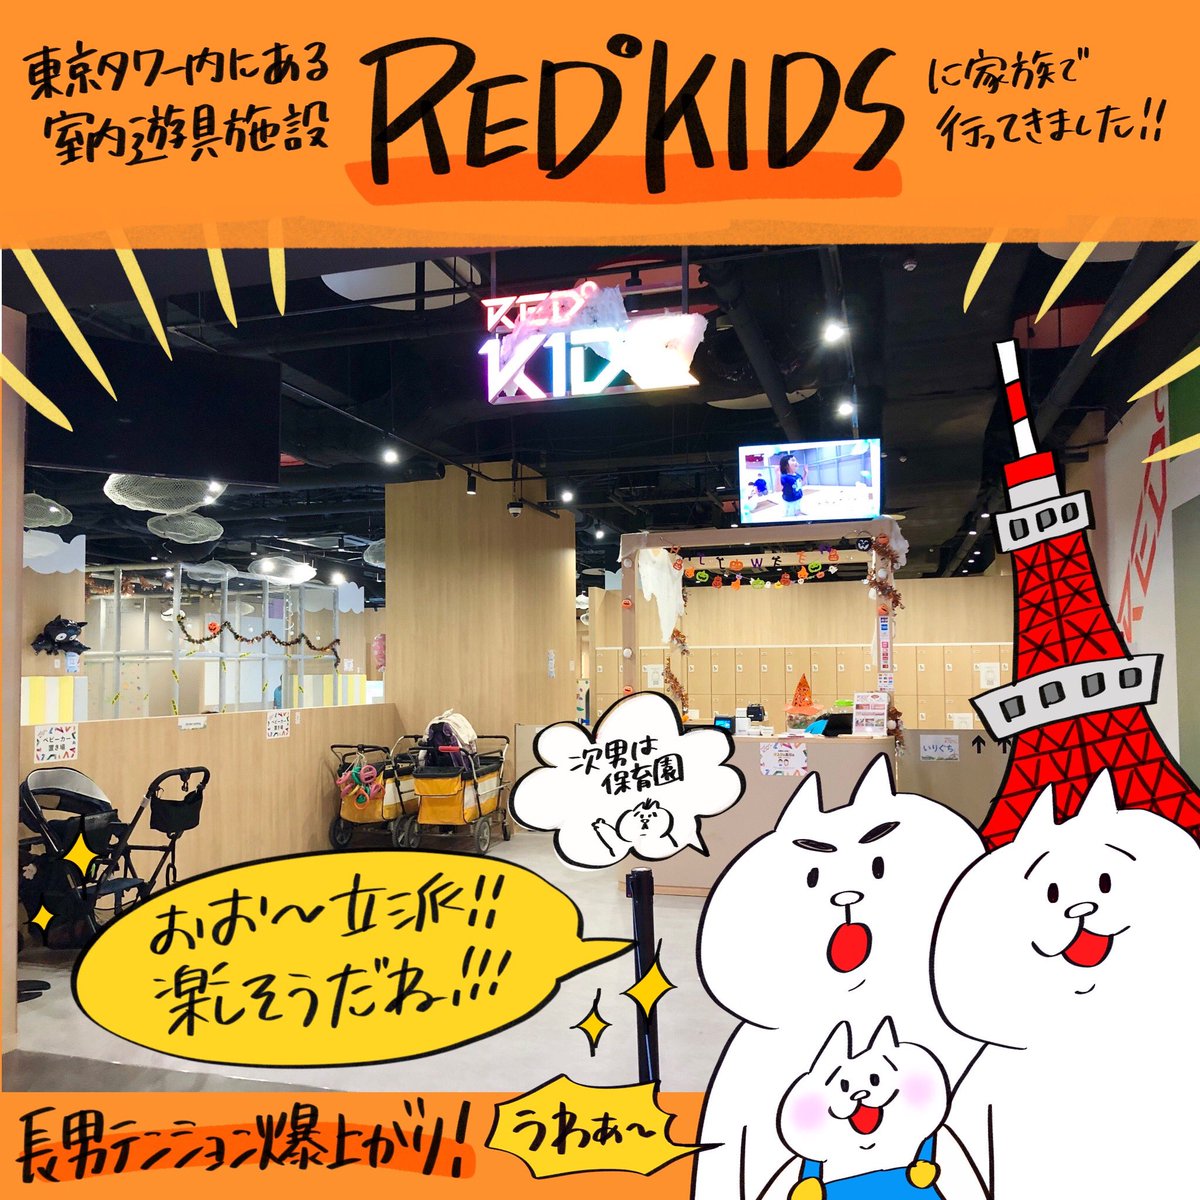 先日東京タワー内にある室内遊具施設『RED° KIDS』にご招待頂き、家族で遊びに行って来ました!
なんと今ならフォロワー様限定でこの投稿を来店時に見せると「次回大人1時間無料券」プレゼントしてくれるそうです!この機会に是非♪ ※有効期限:1ヶ月(12月2日まで)
#RED_KIDS #PR
@RED_TOKYOTOWER 